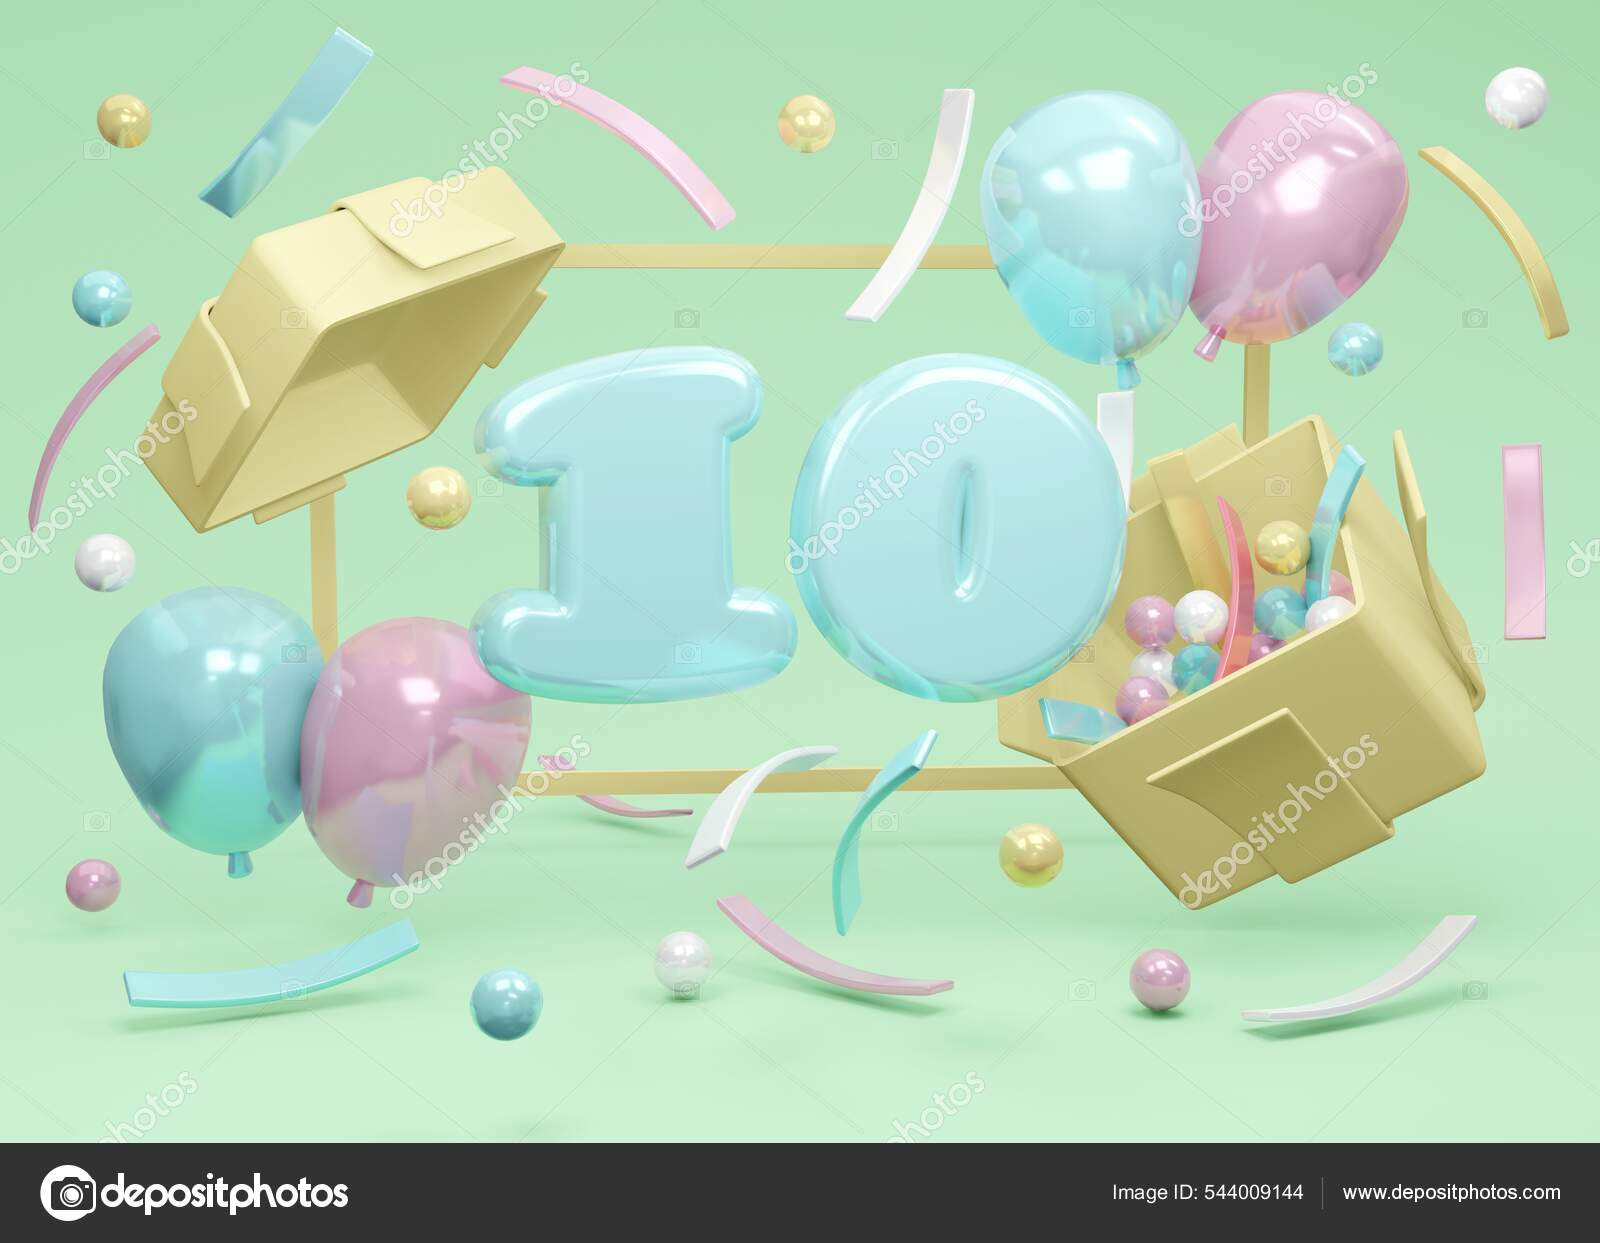 Fond De Fête D'anniversaire Avec Le Cadeau Et Les Confettis Image